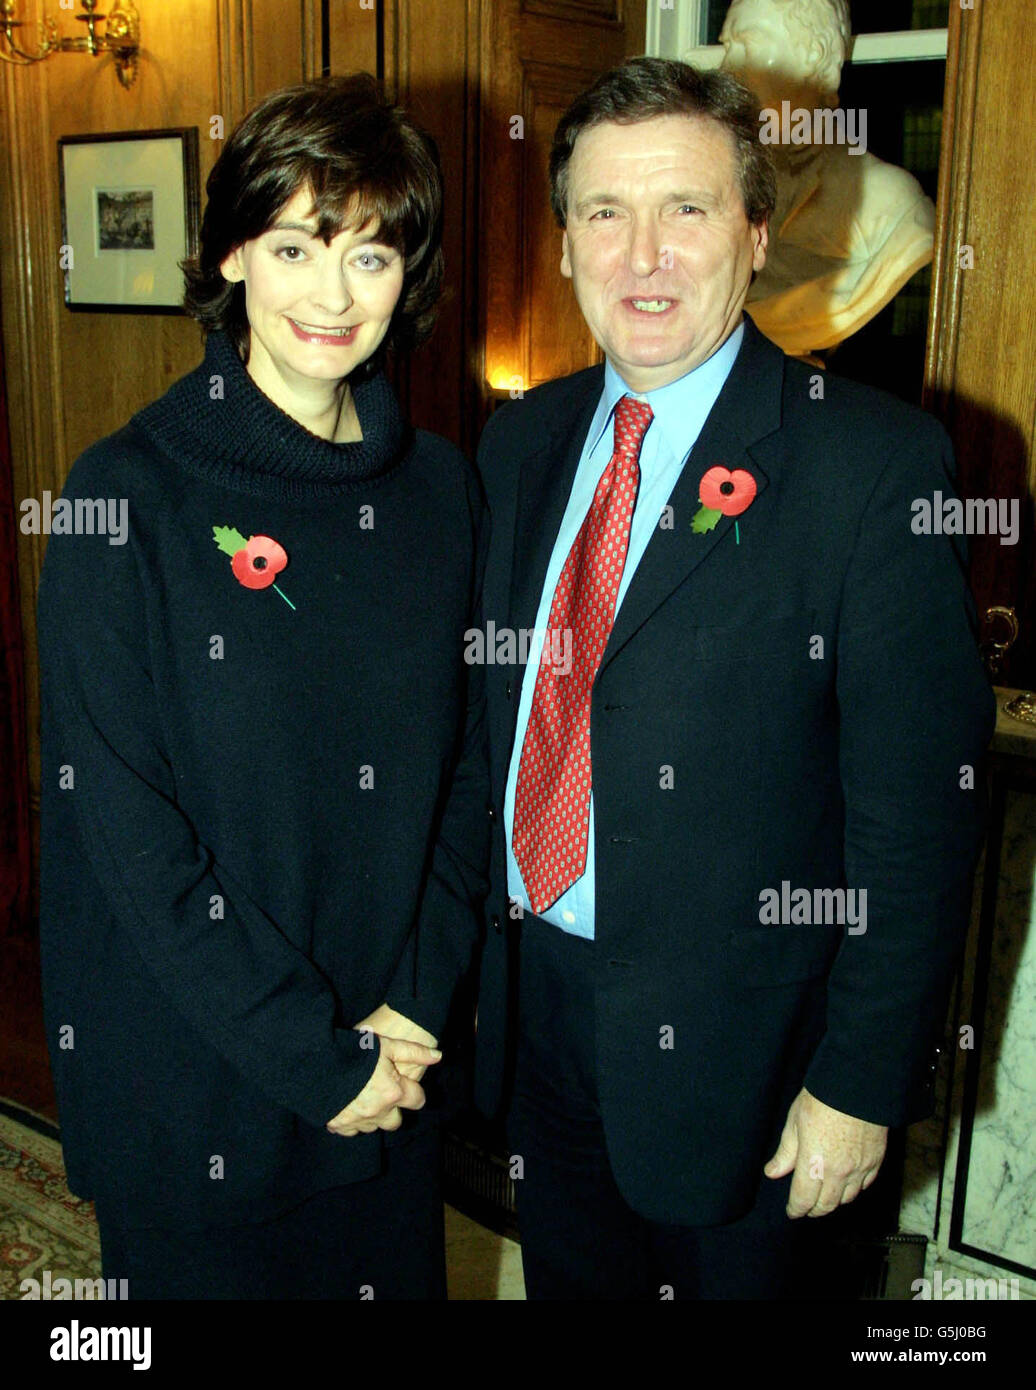 Le député de East Dunbarton John Lyons pose avec l'épouse du Premier ministre britannique Cherie Blair lors d'une visite à Downing Street. Banque D'Images